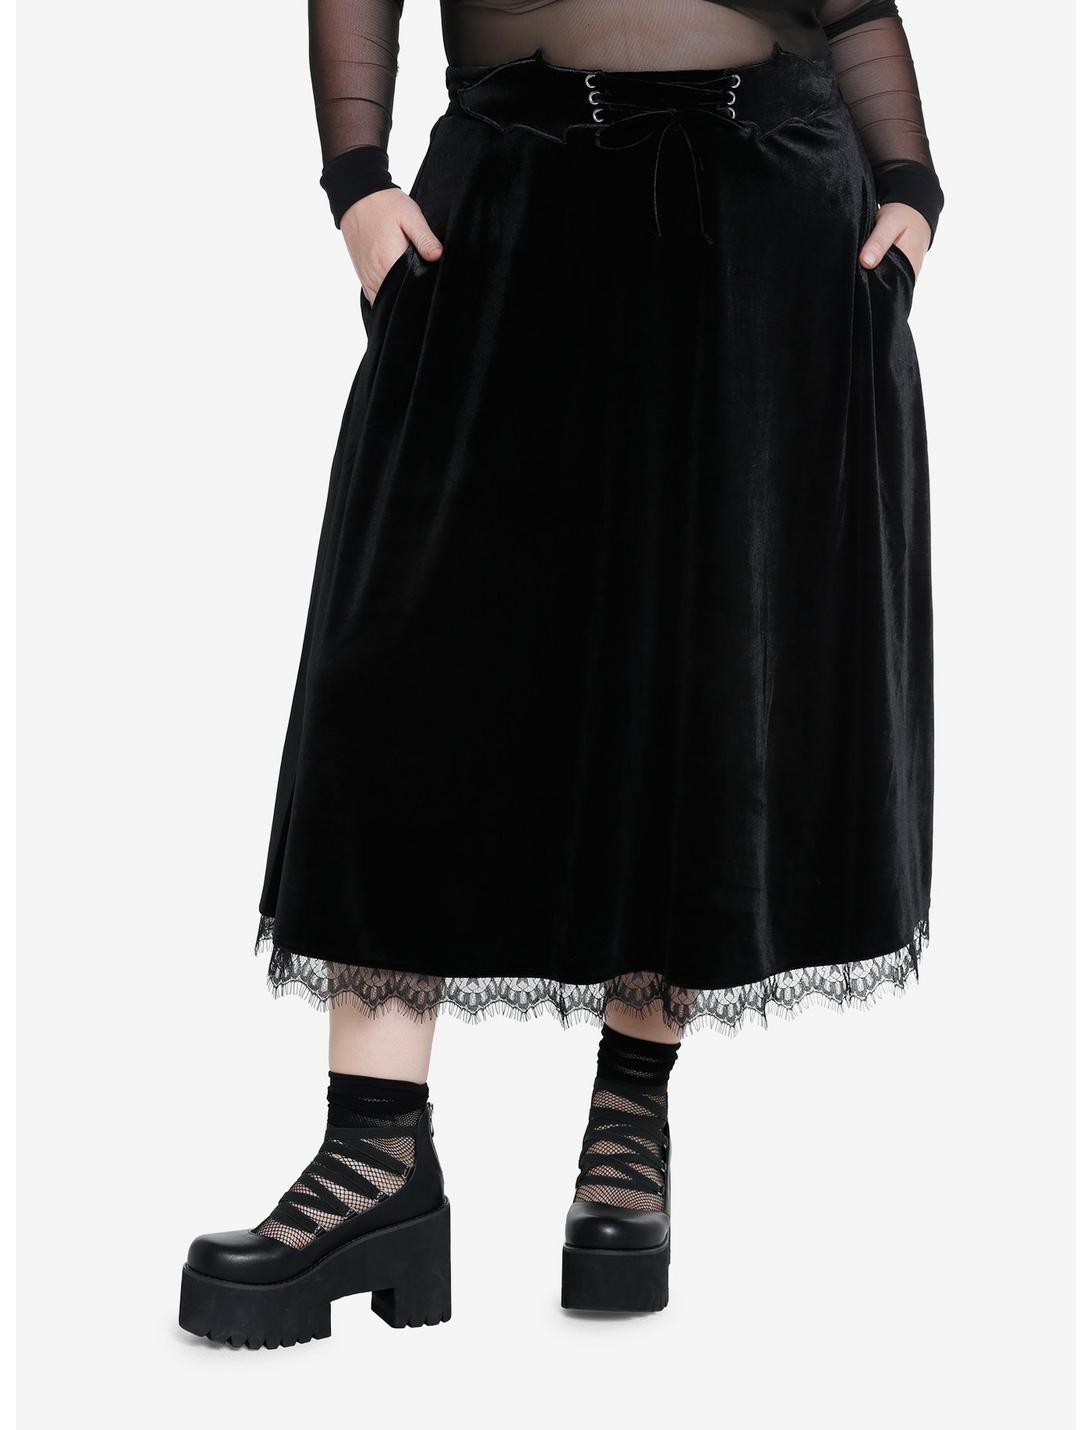 Cosmic Aura Black Bat Velvet Midi Skirt Plus Size, BLACK, hi-res